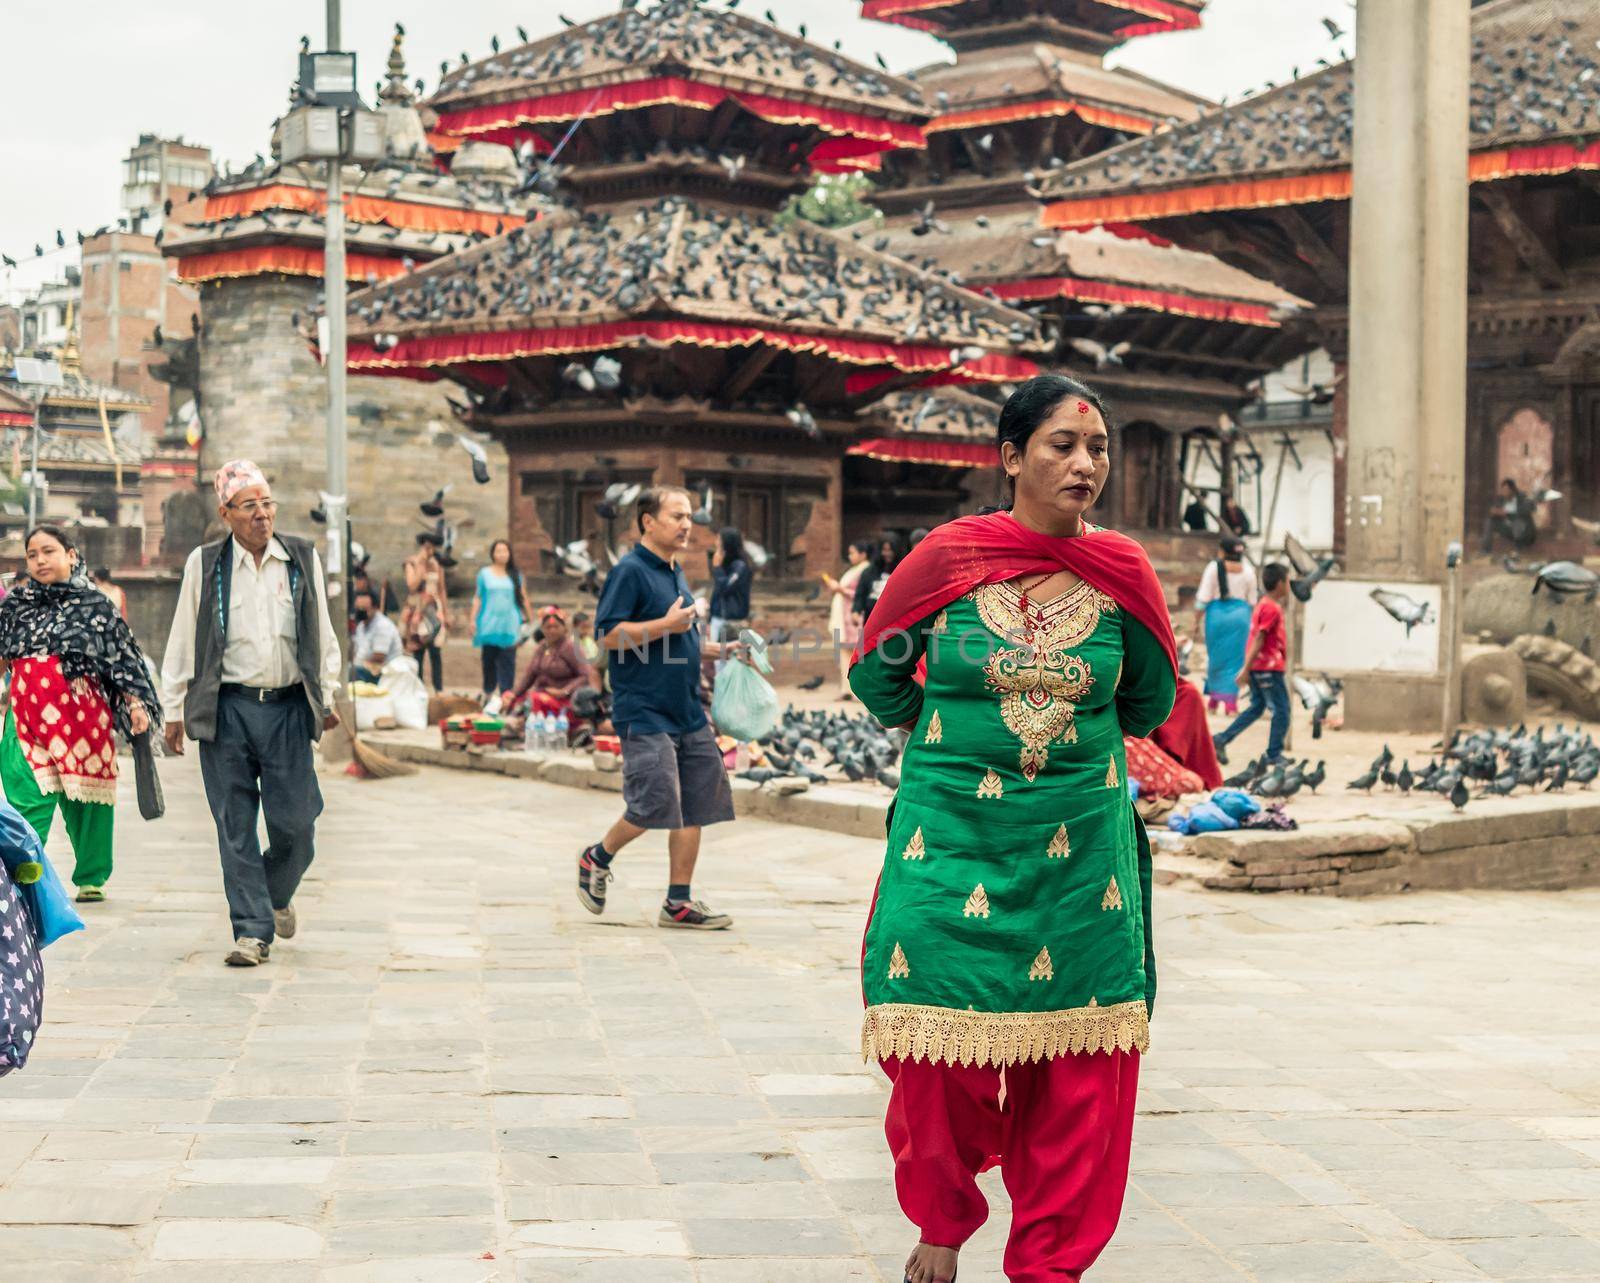 People walking at Durbar Square in Kathmandu by tan4ikk1